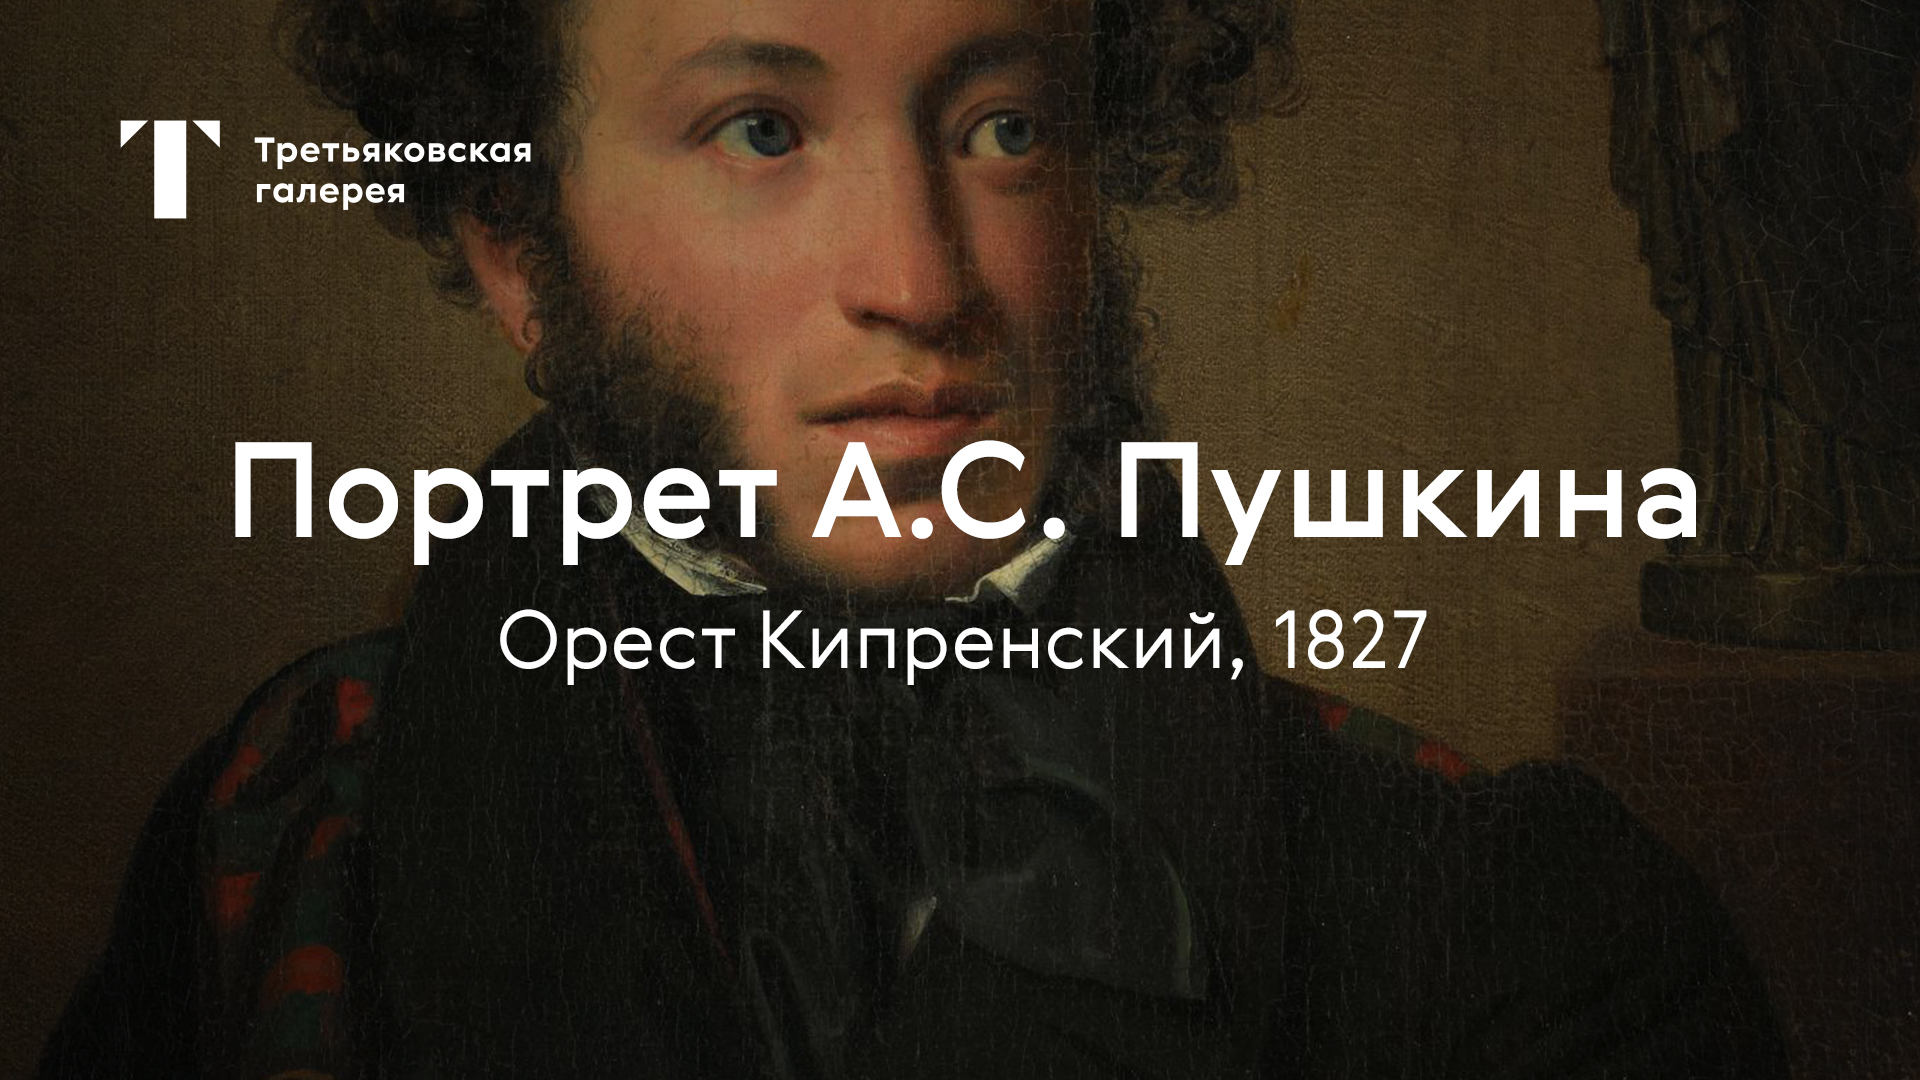 Портрет Пушкина в Третьяковской галерее